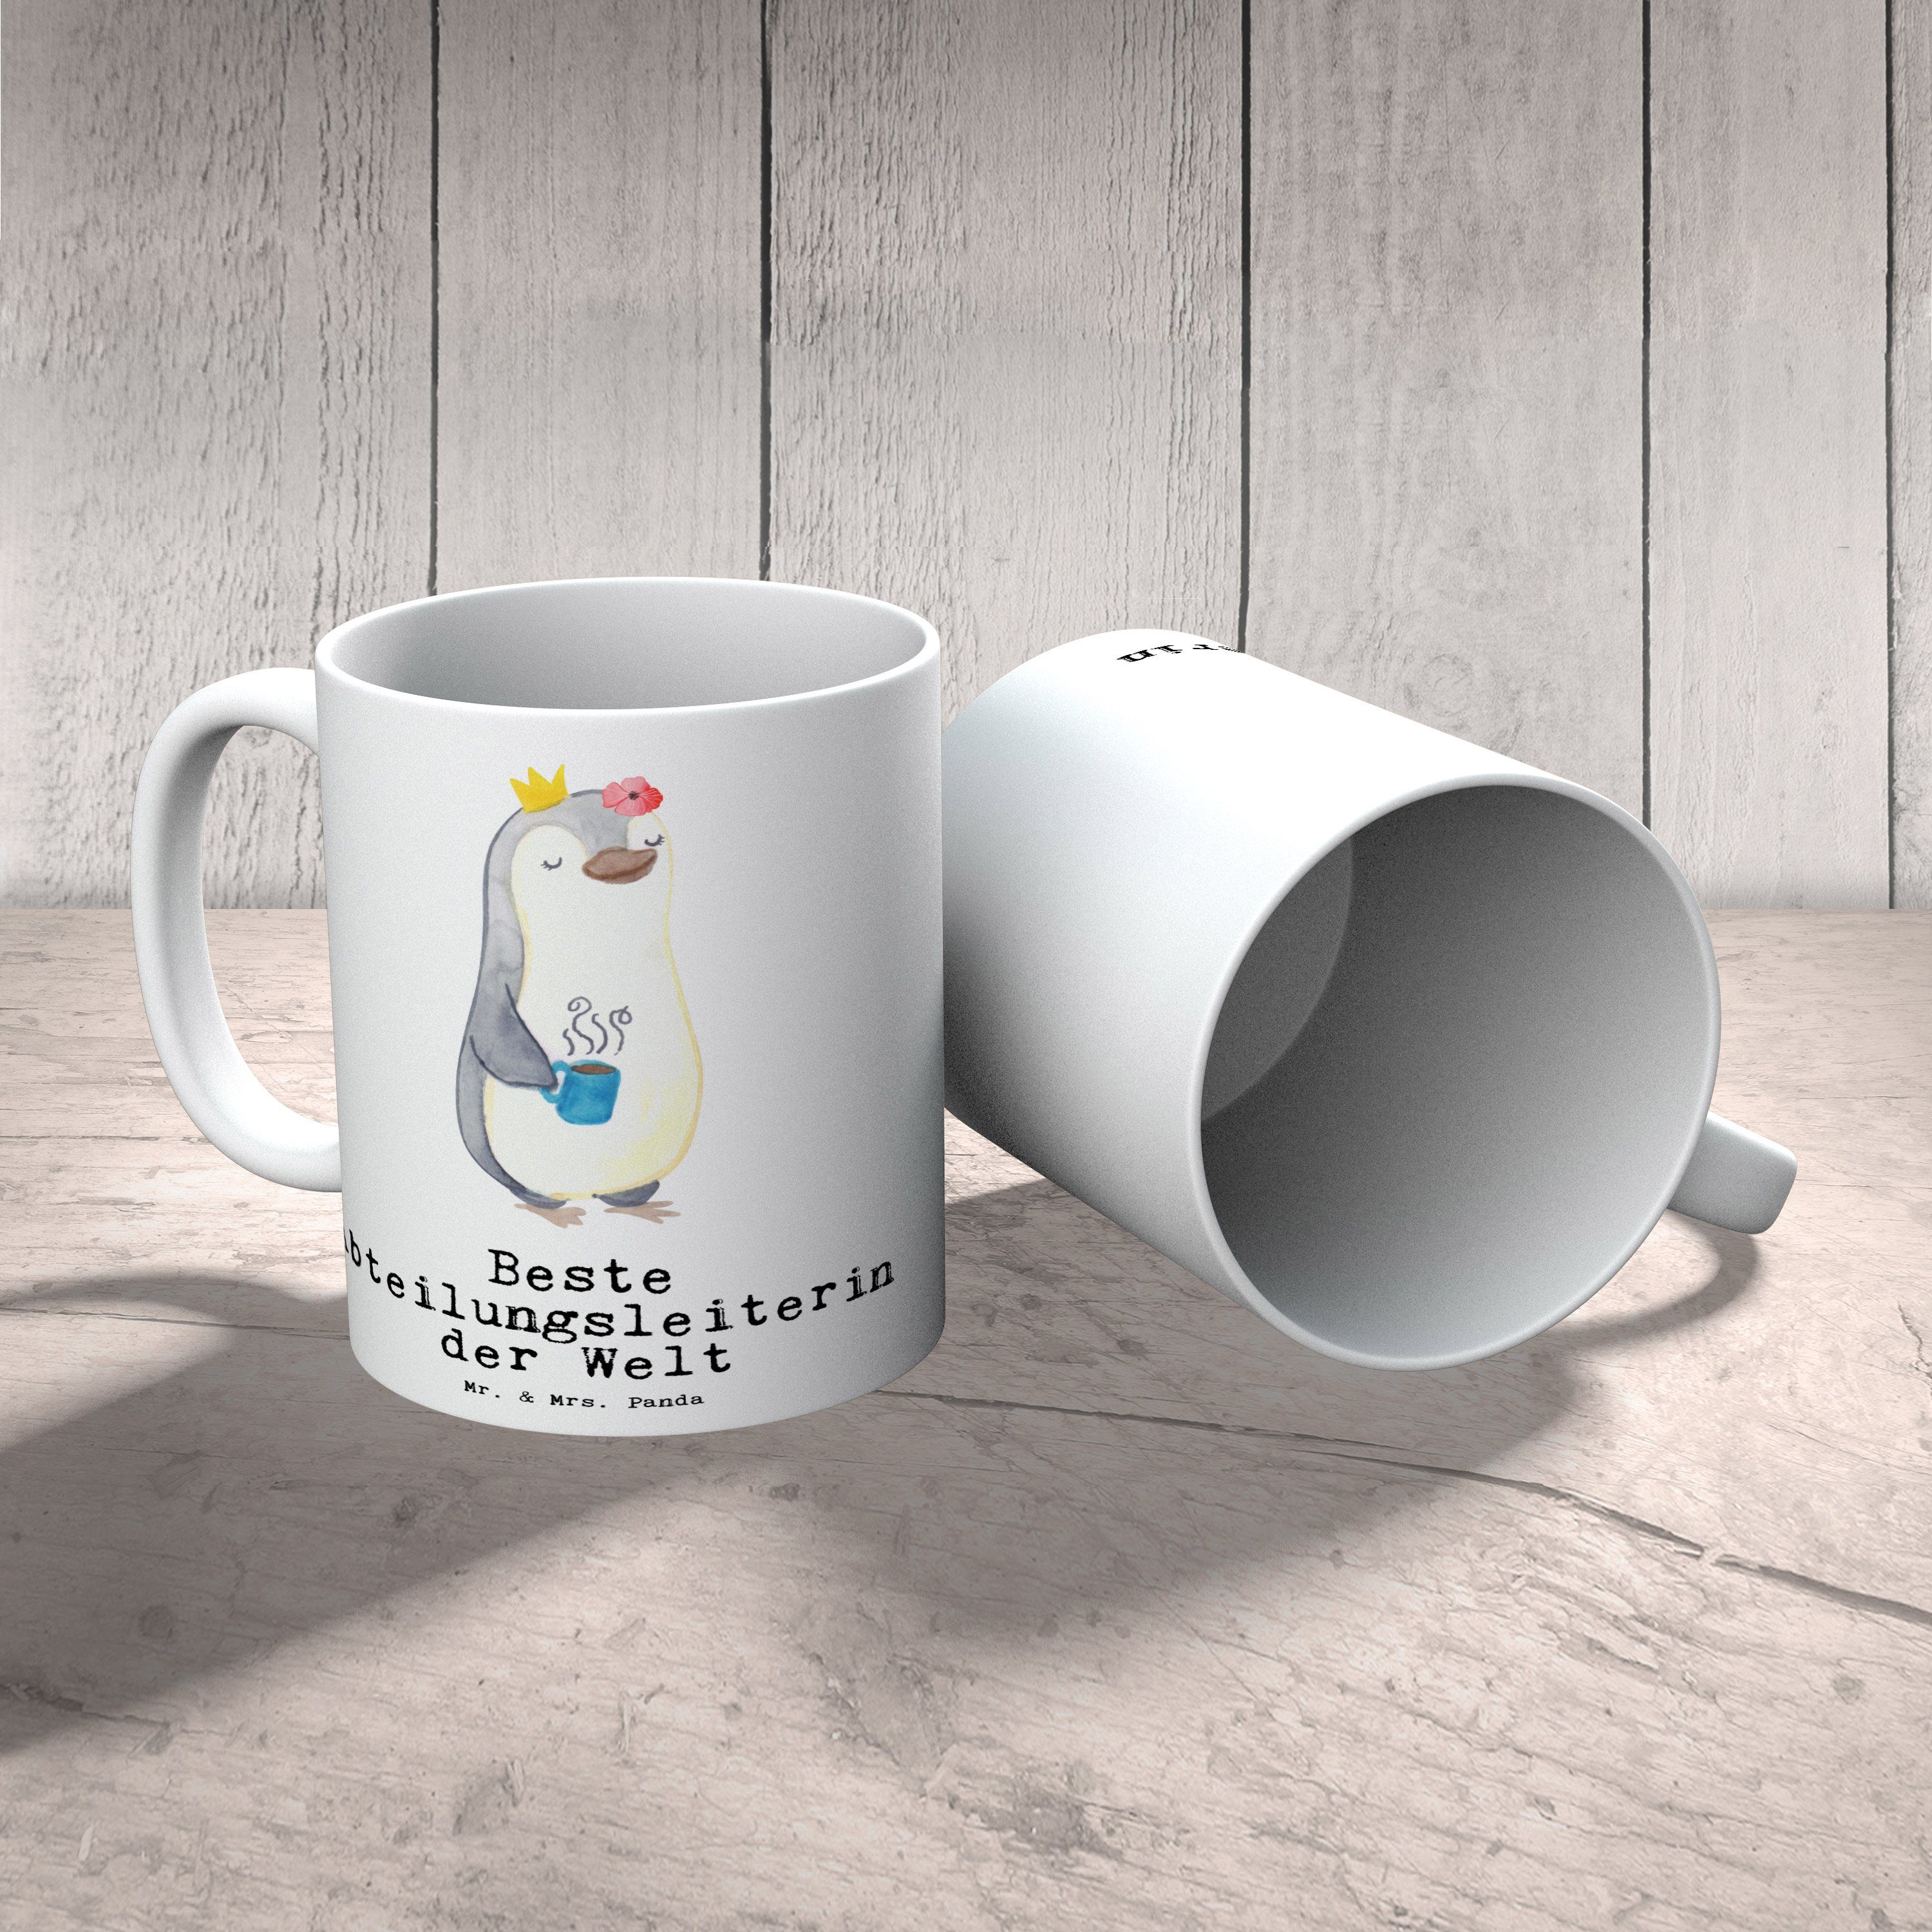 Pinguin Beste Mrs. Keramik Geschäftsführerin, Dankeschön, der Becher, Büro, Panda Welt Tasse Weiß - Tee, - & Mitbringsel, Mr. Vorgesetzte, Geschenk, Abteilungsleiterin Kaffeetasse,